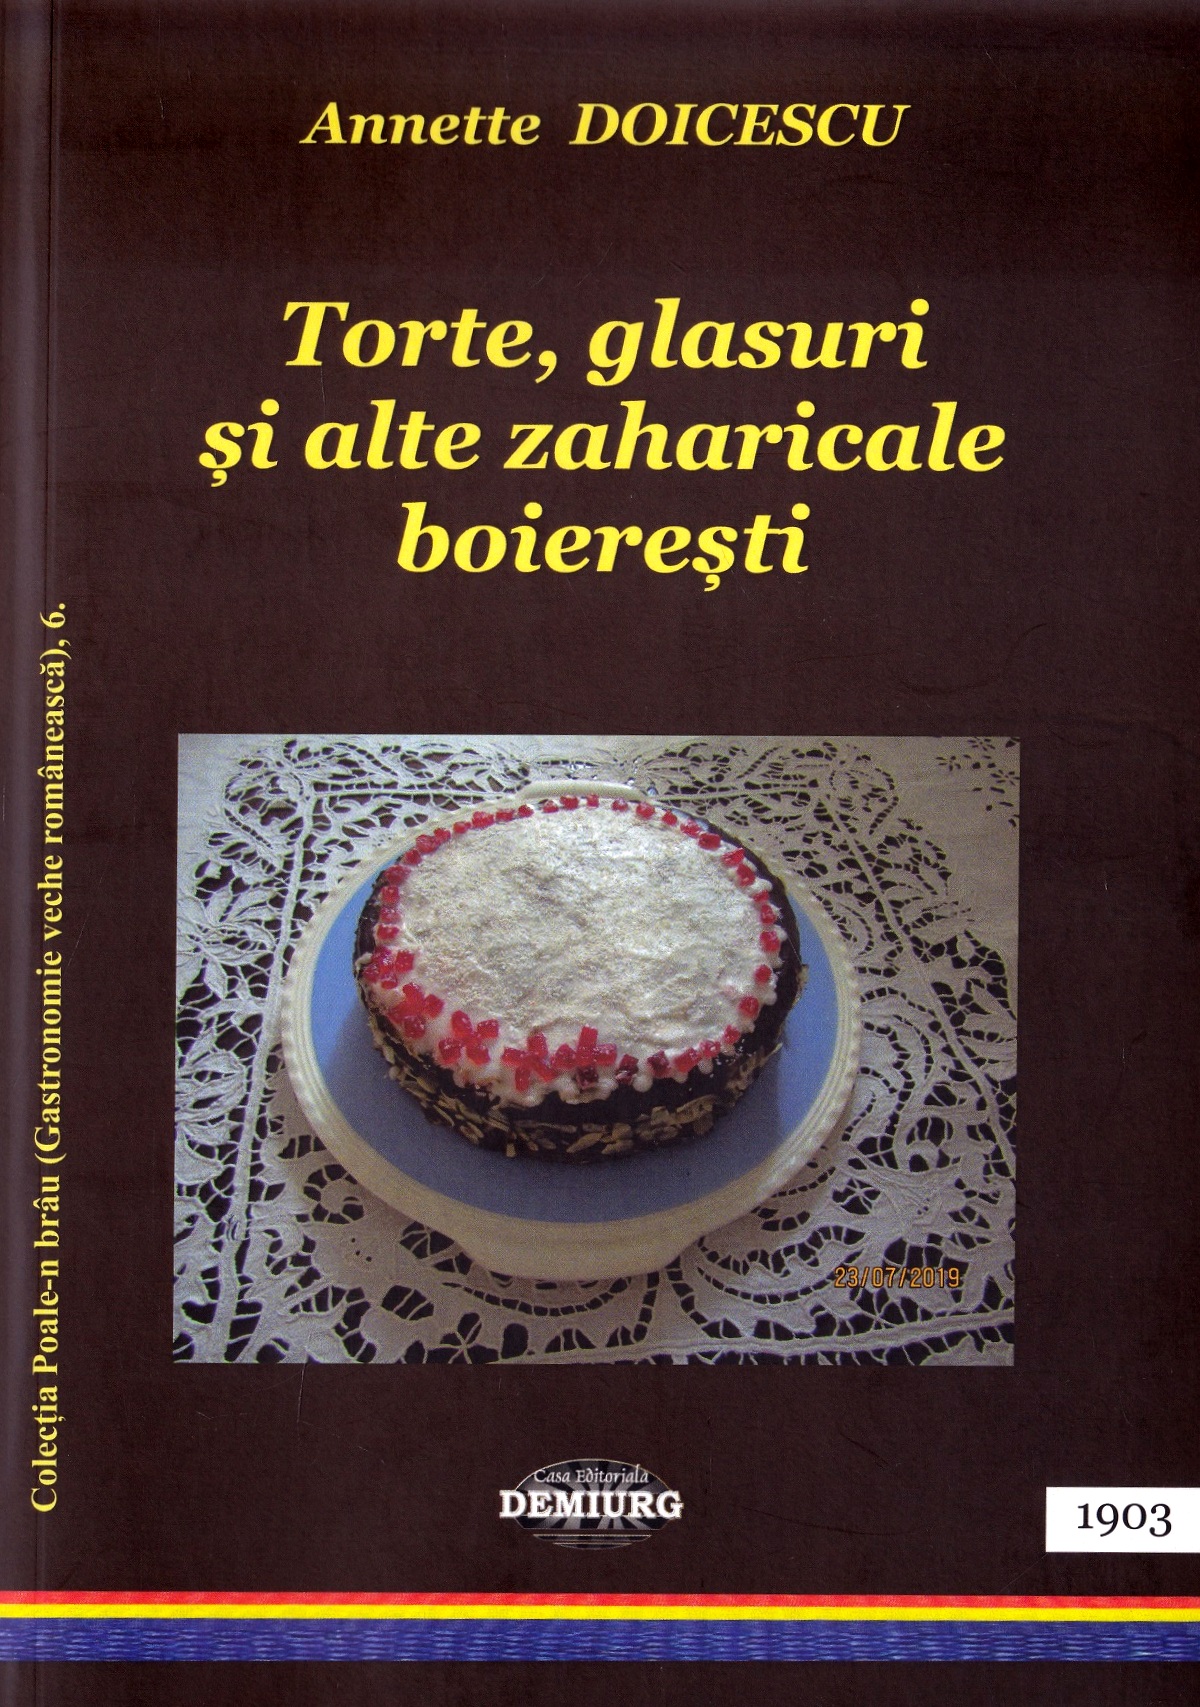 Torte, glasuri ai alte zaharicale boieresti - Annette Doicescu